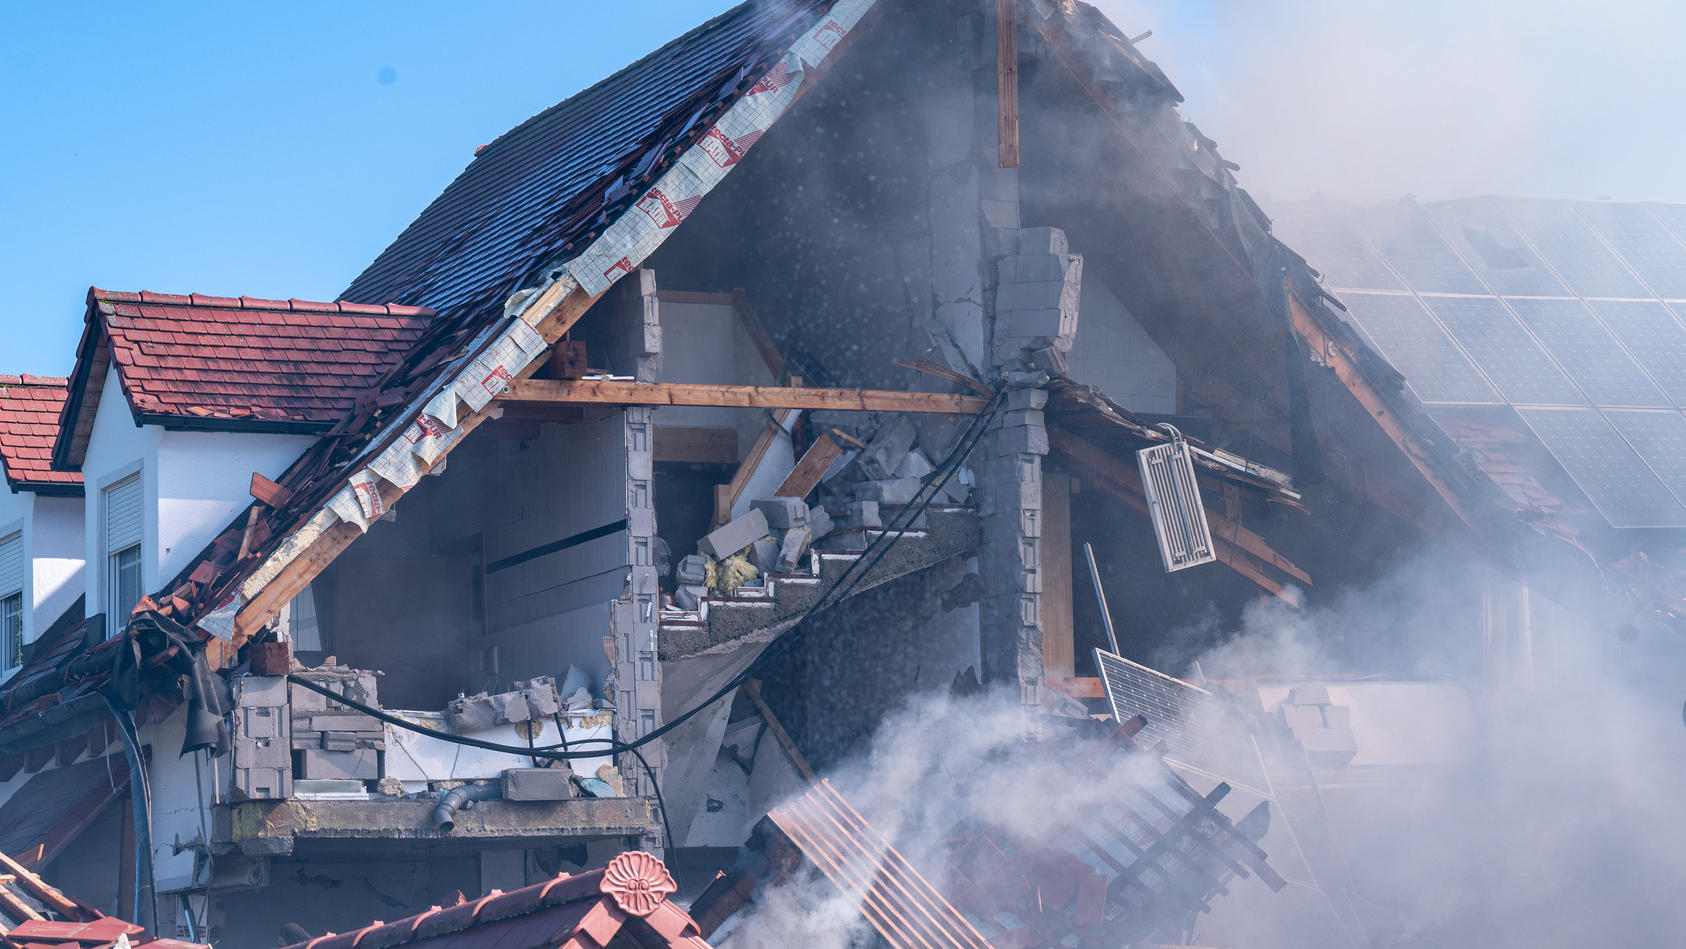 02.09.2021, Bayern, Rohrbach: Ein Blich auf ein eingestürztes Haus , in dem es zuvor nach Angaben der Polizei eine Explosion gegeben hatte. Foto: Armin Weigel/dpa +++ dpa-Bildfunk +++